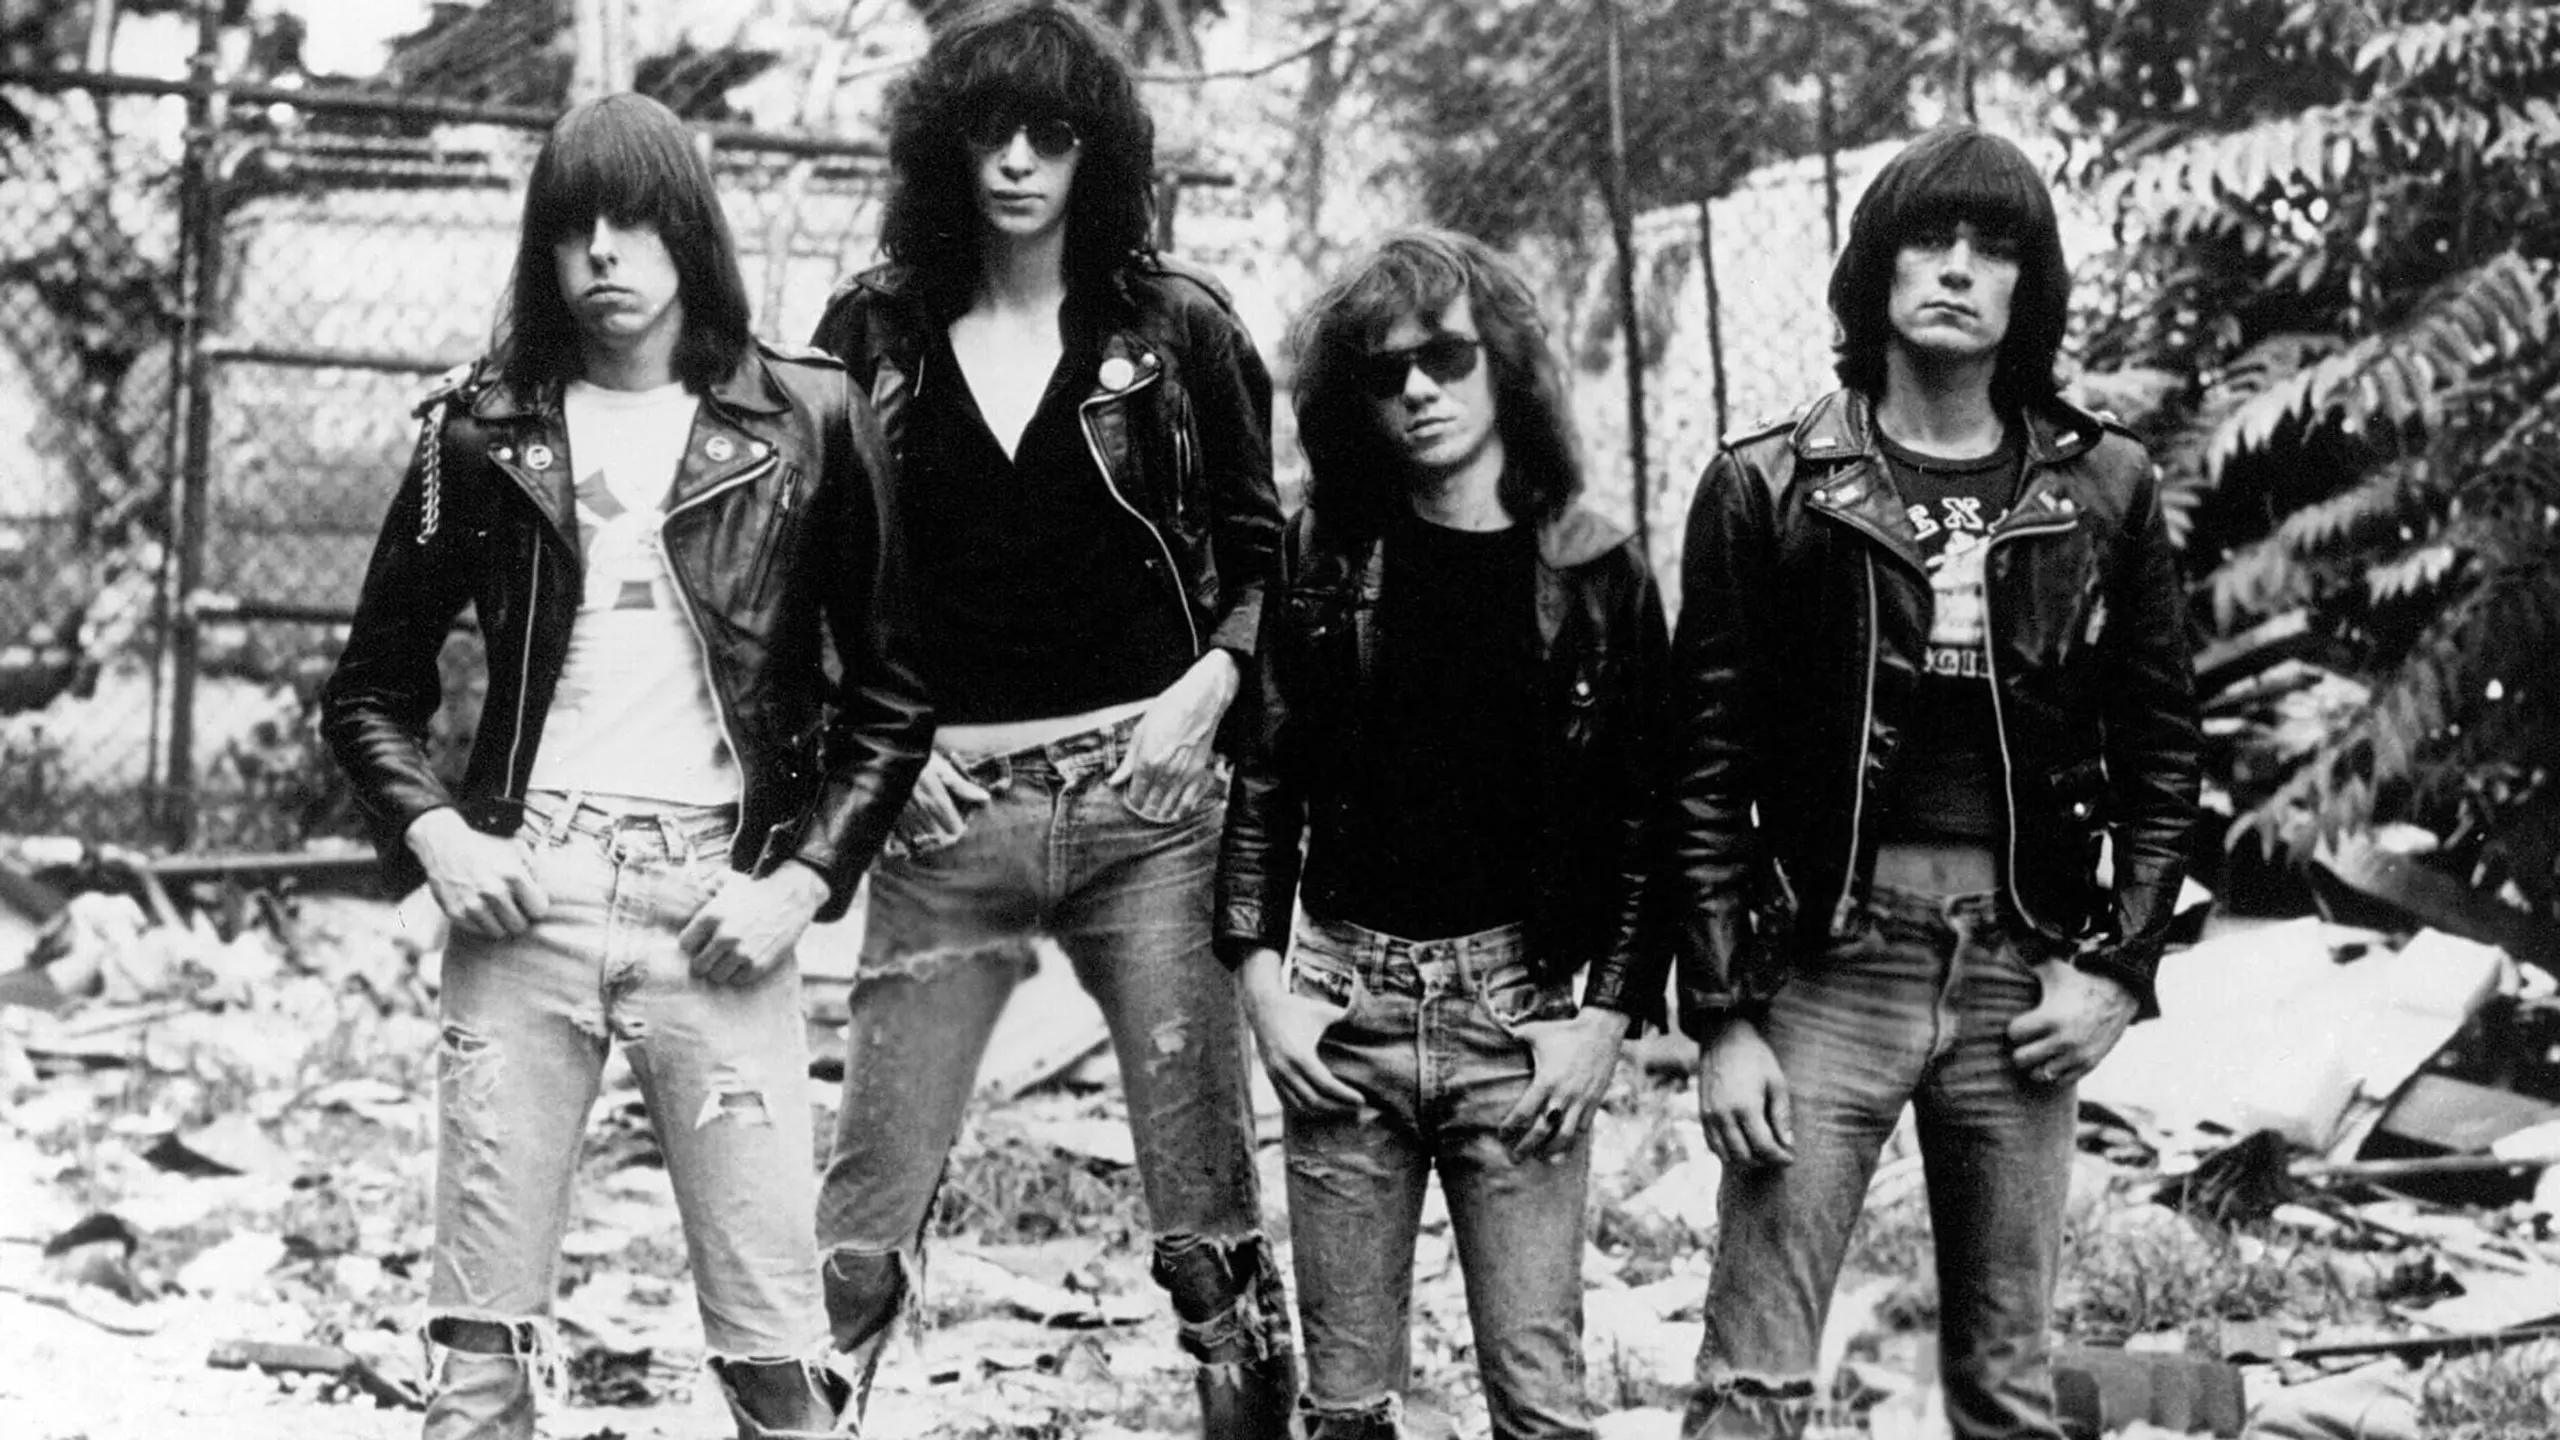 The Ramones: It's Alive (1974-1996)